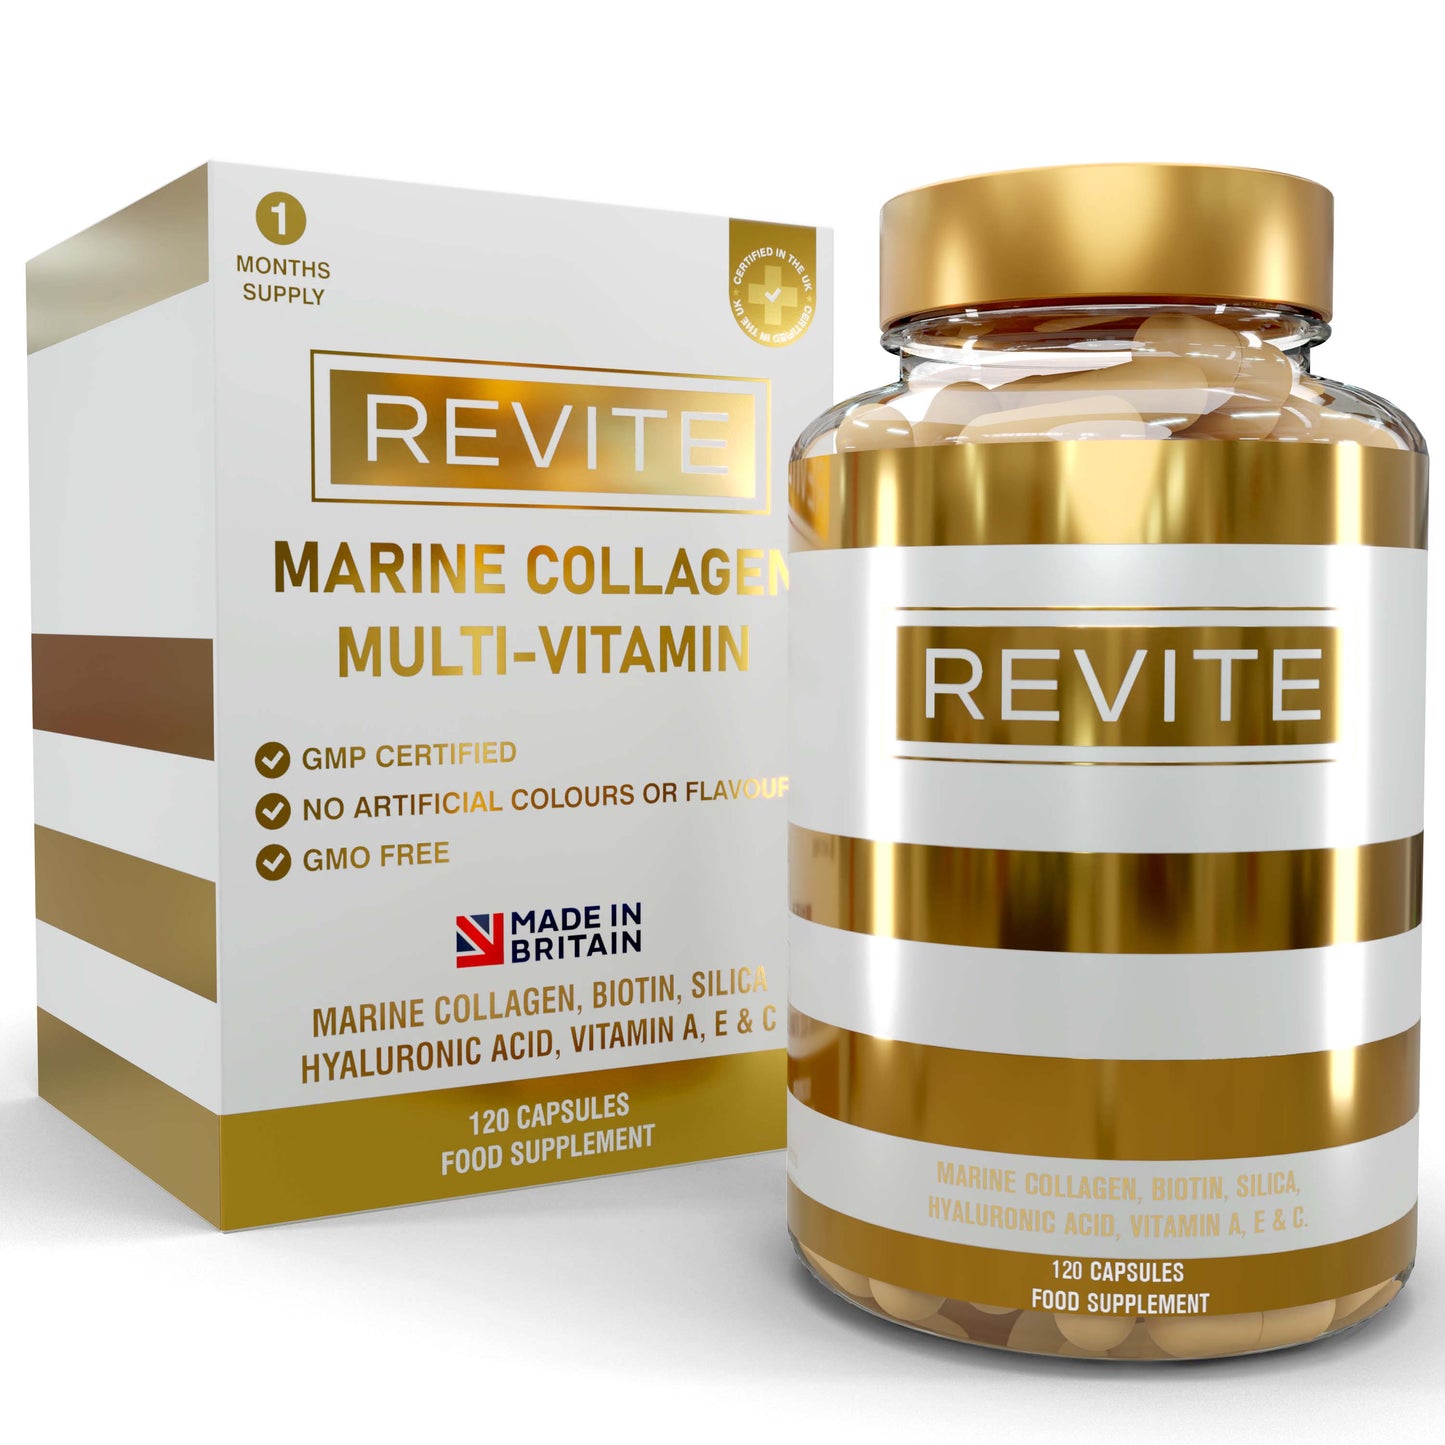 REVITE Marine Collagen Multivitamin - Collagen (marine), Biotin, Silica, Vitamin A, E and C.